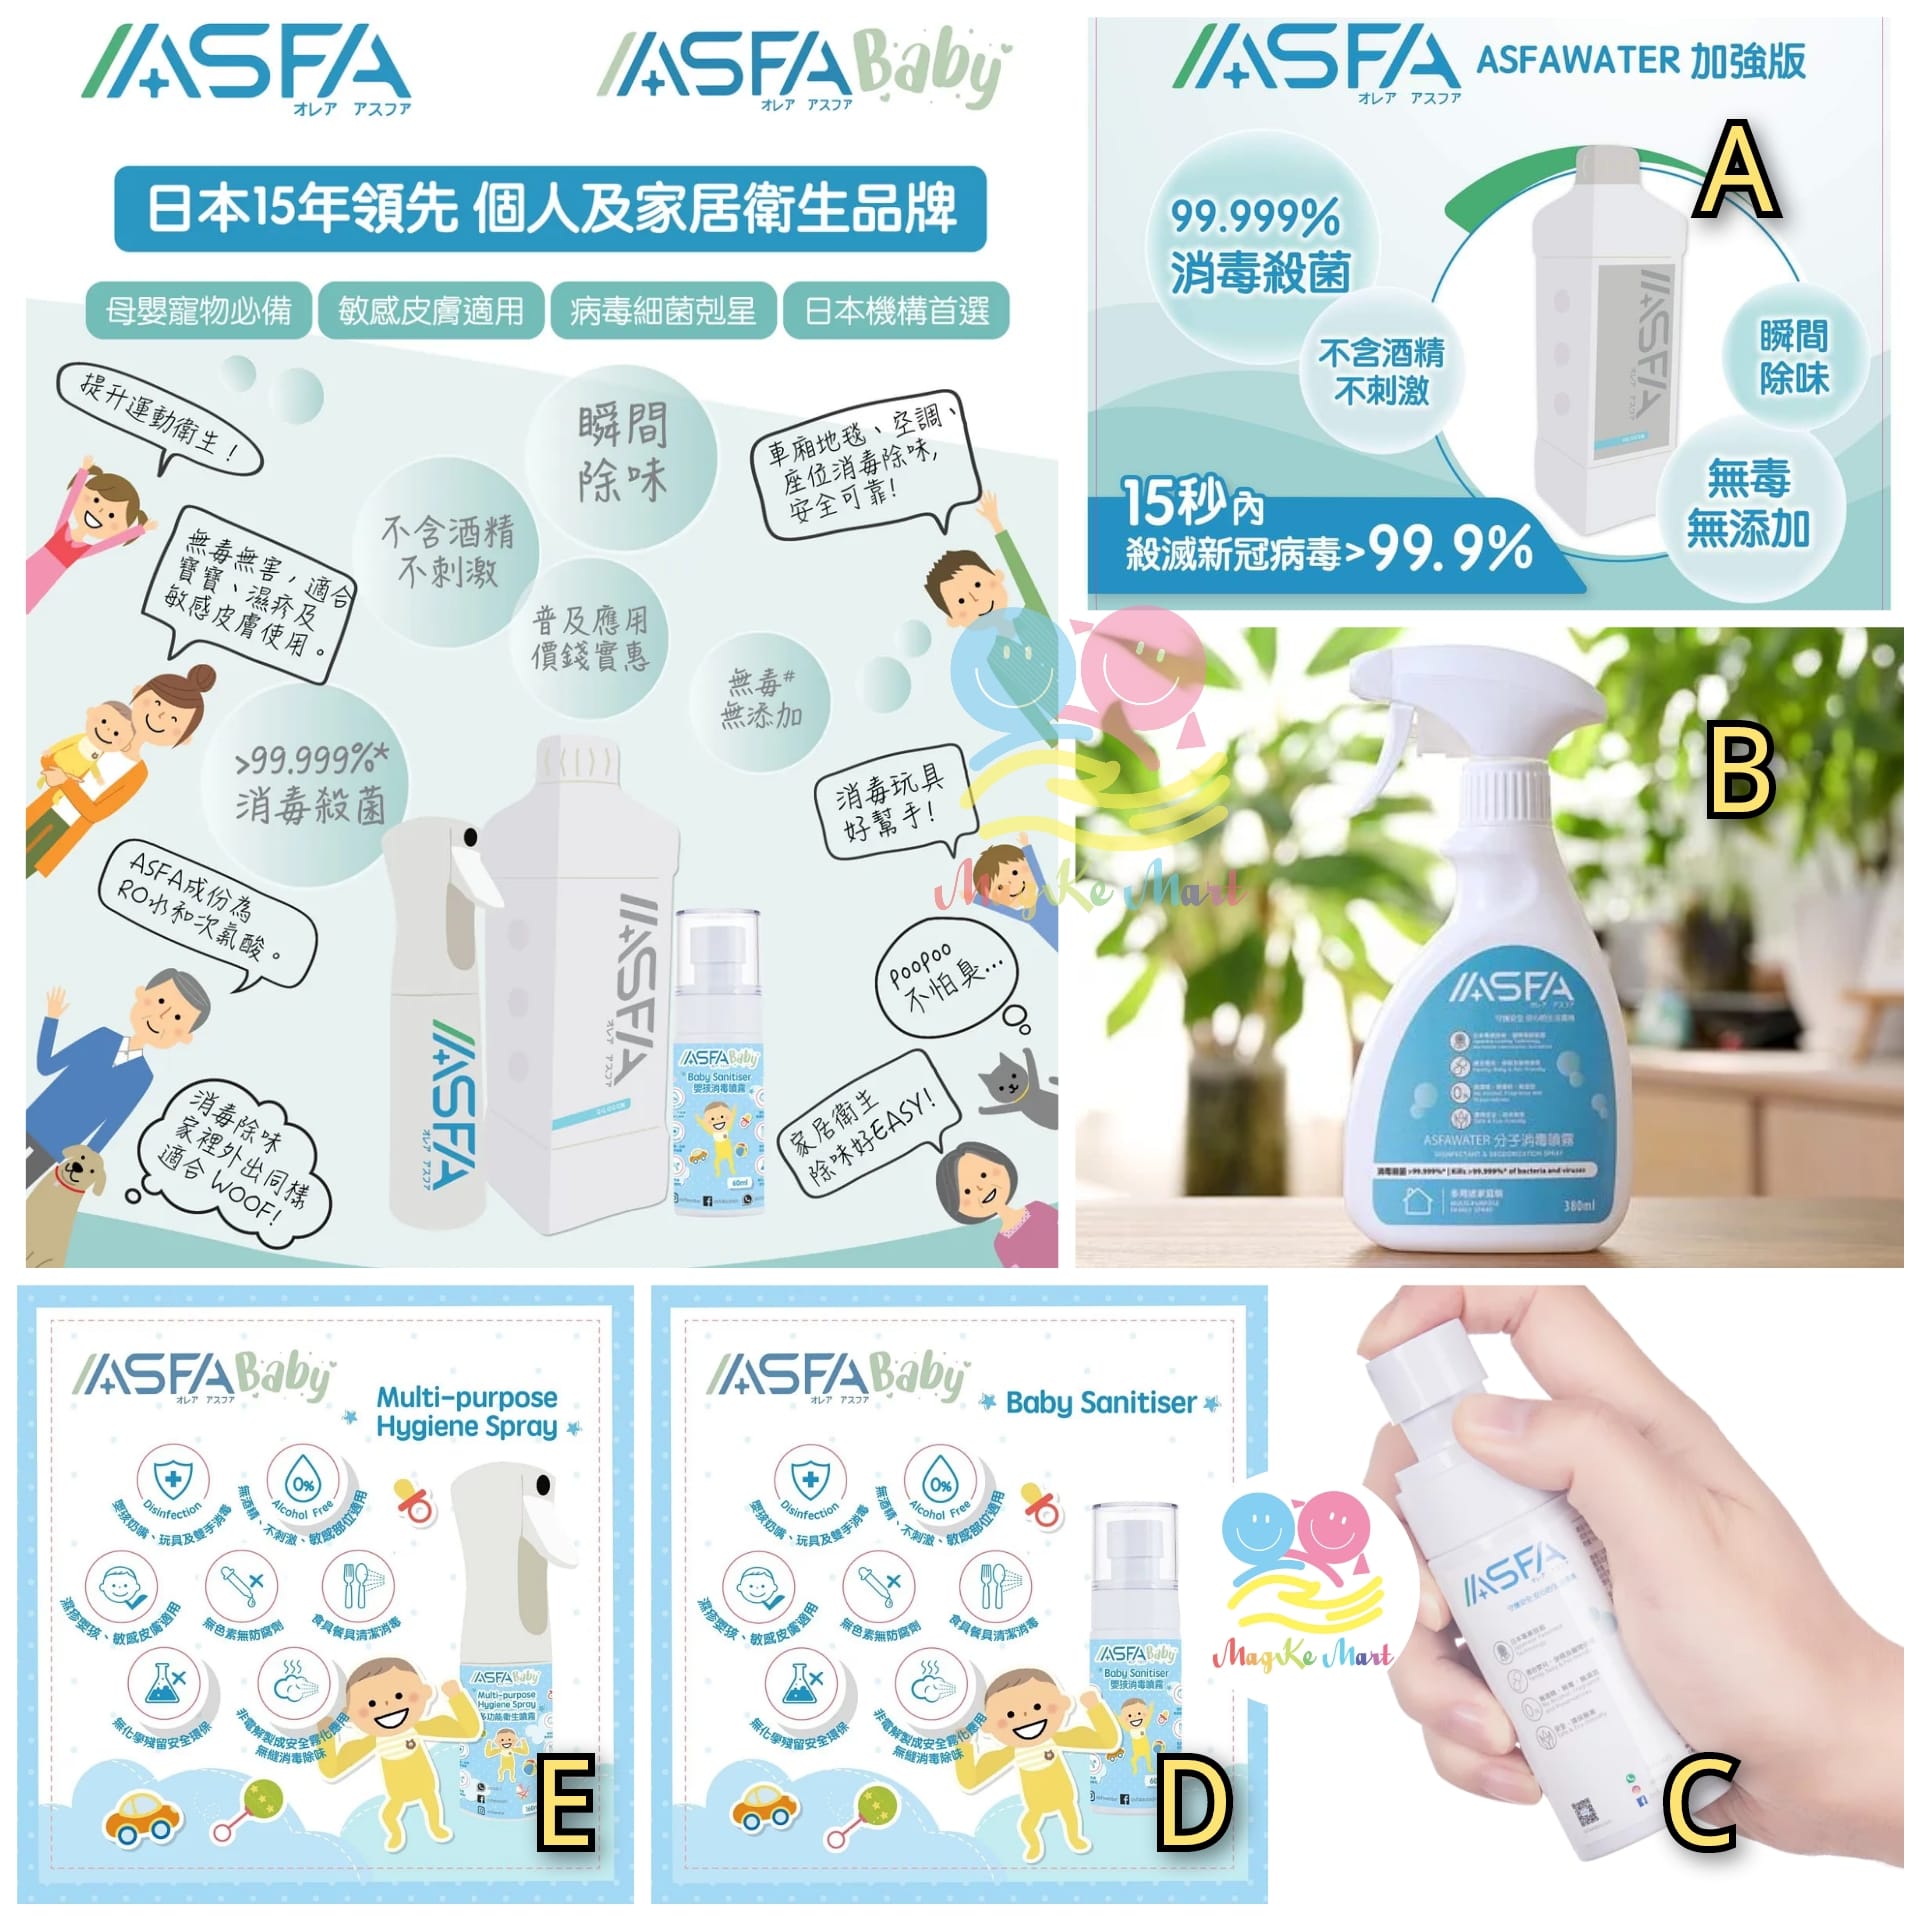 日本 ASFA 消毒噴霧系列 (D) ASFABaby 嬰兒消毒噴霧 60ml